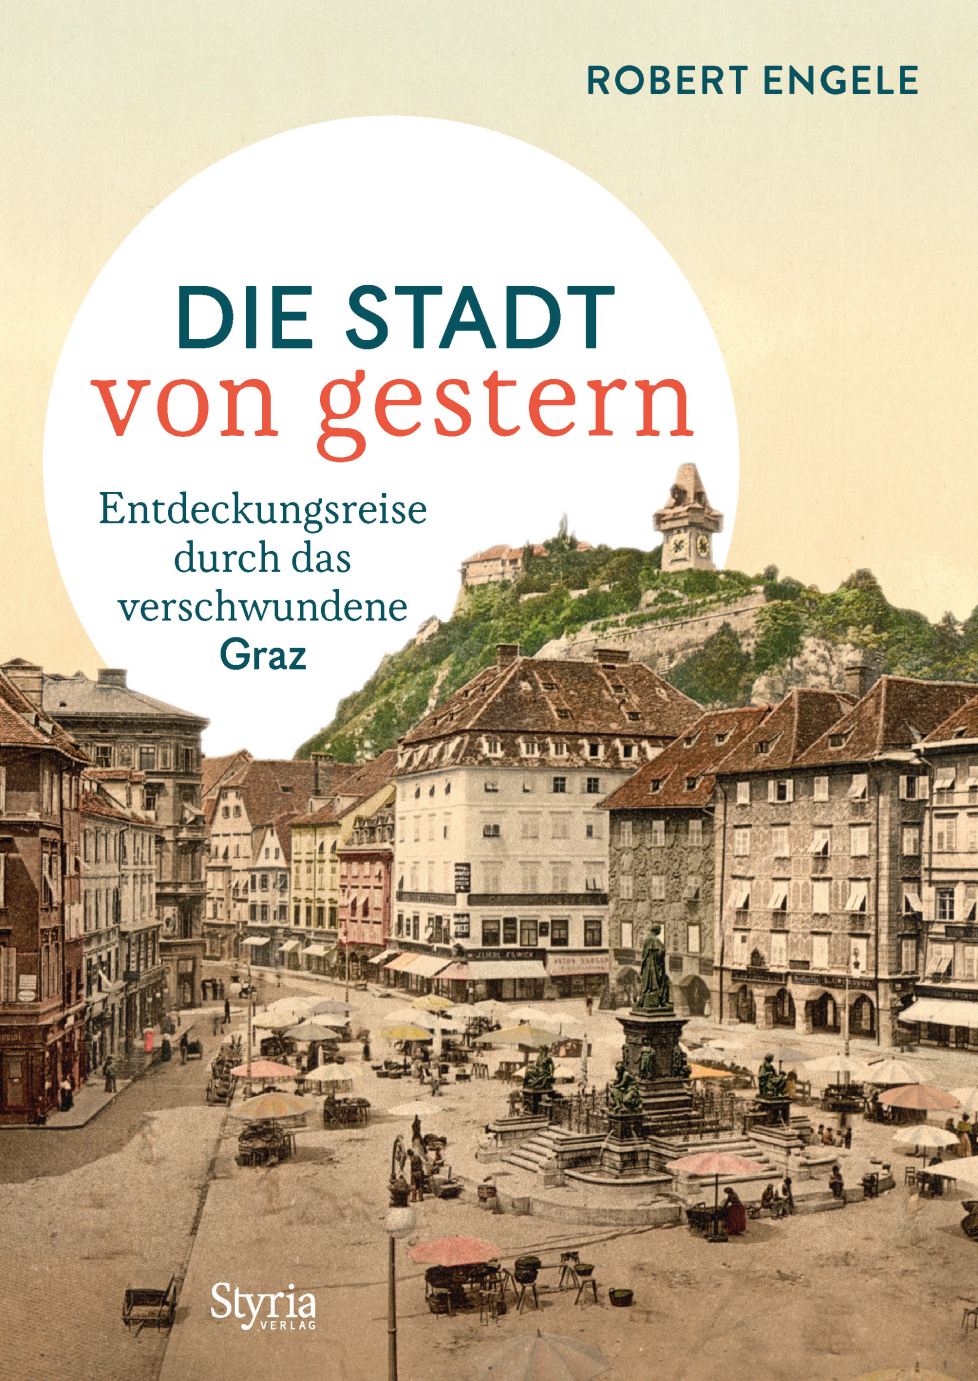 Graz – Die Stadt von gestern